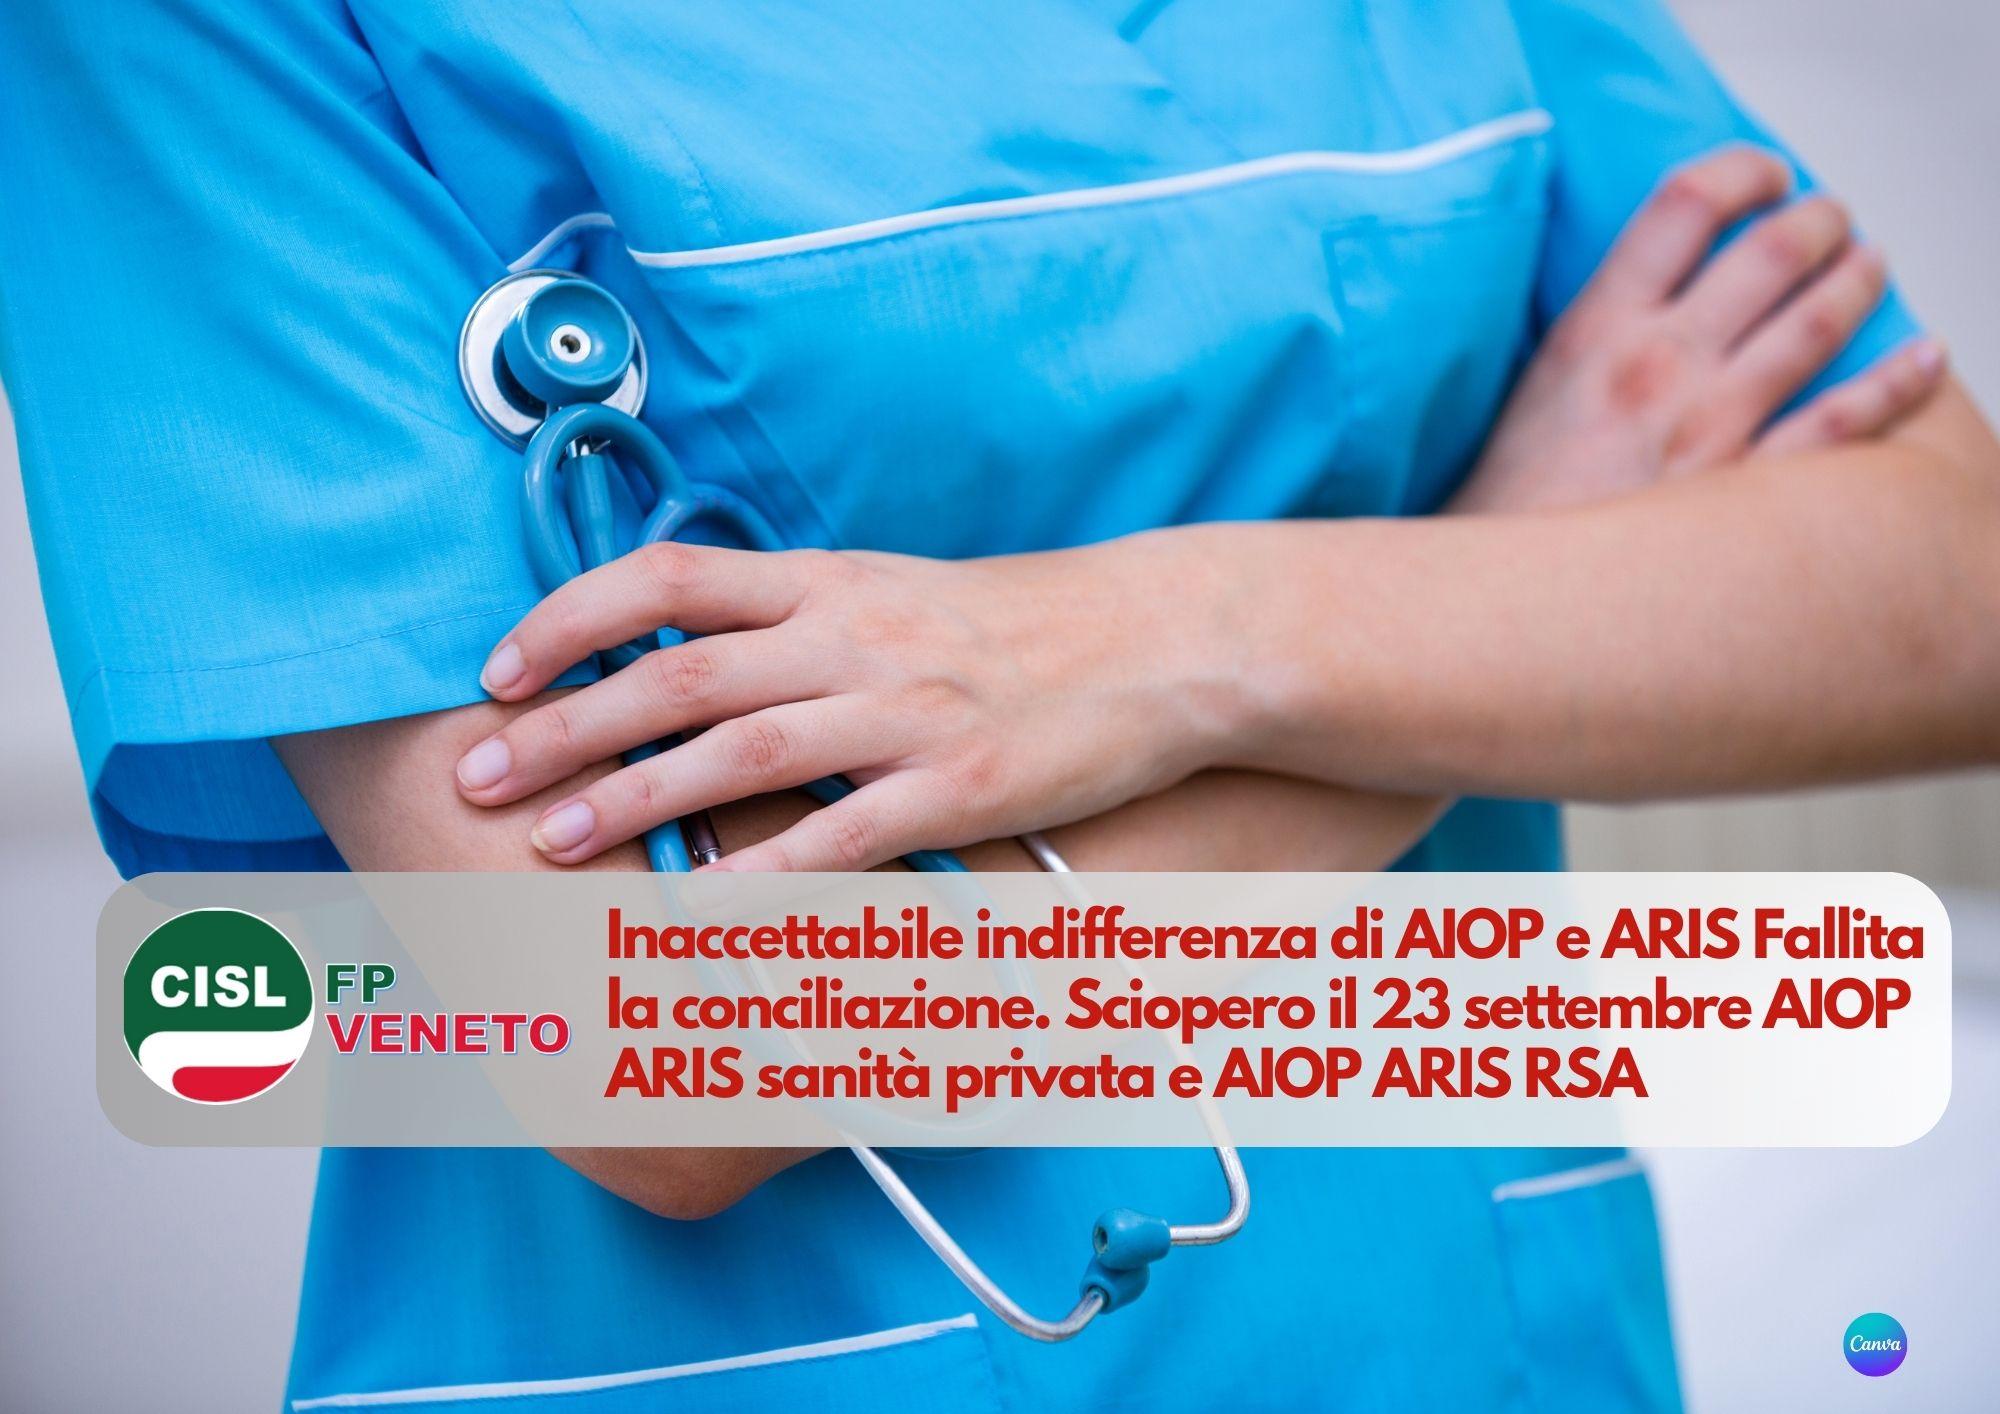 CISL FP Veneto. Sanità privata AIOP - ARIS: fallita conciliazione. Sciopero il 23 settembre